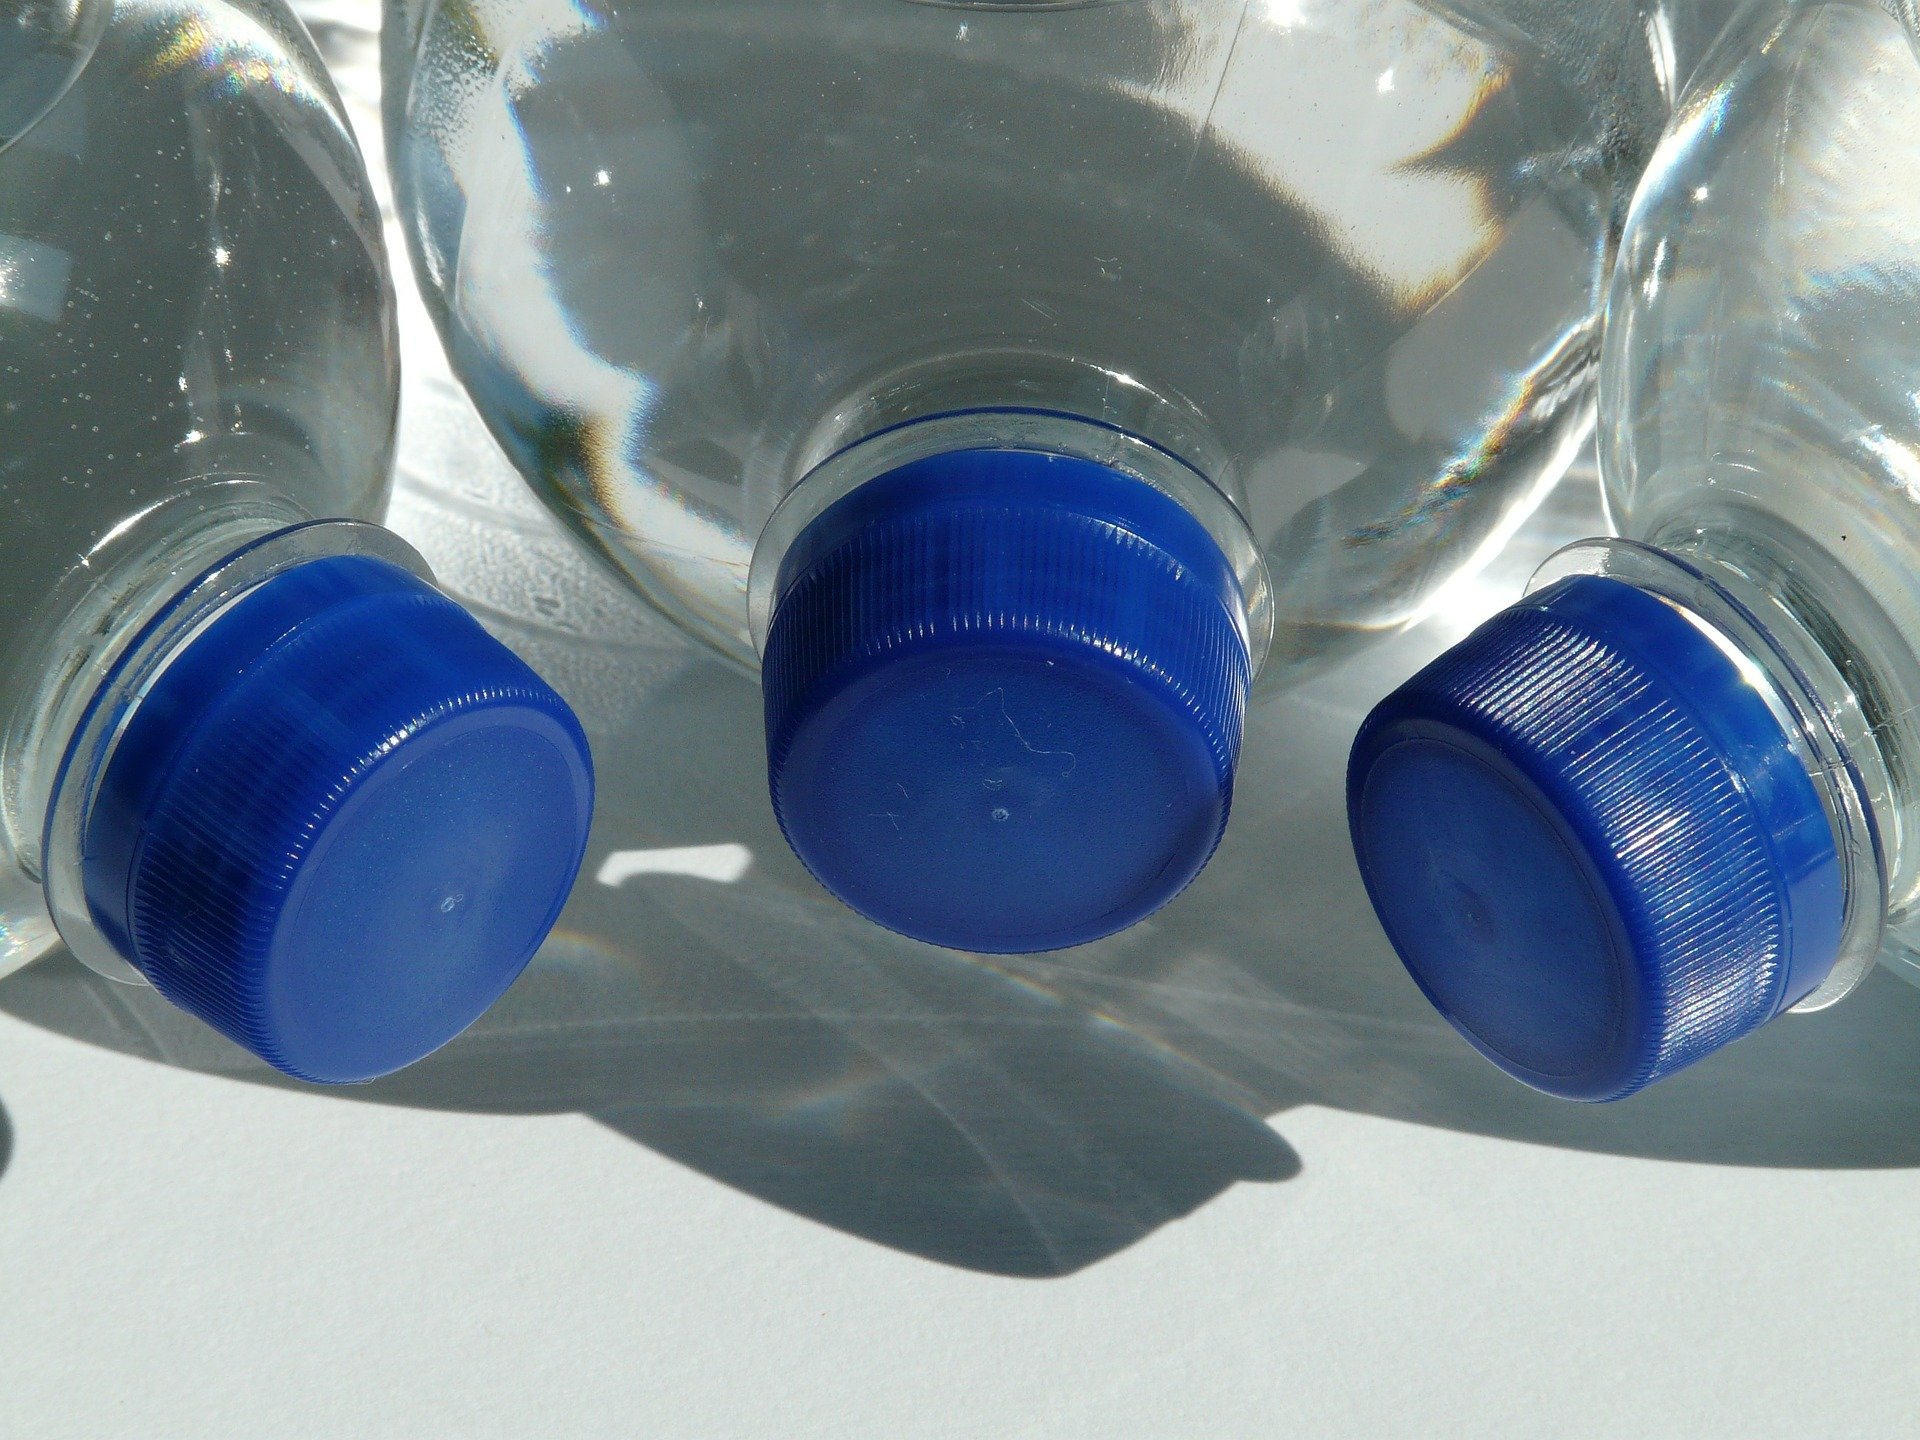 Los aeropuertos tendrán que vender botellas de agua a 1 euro